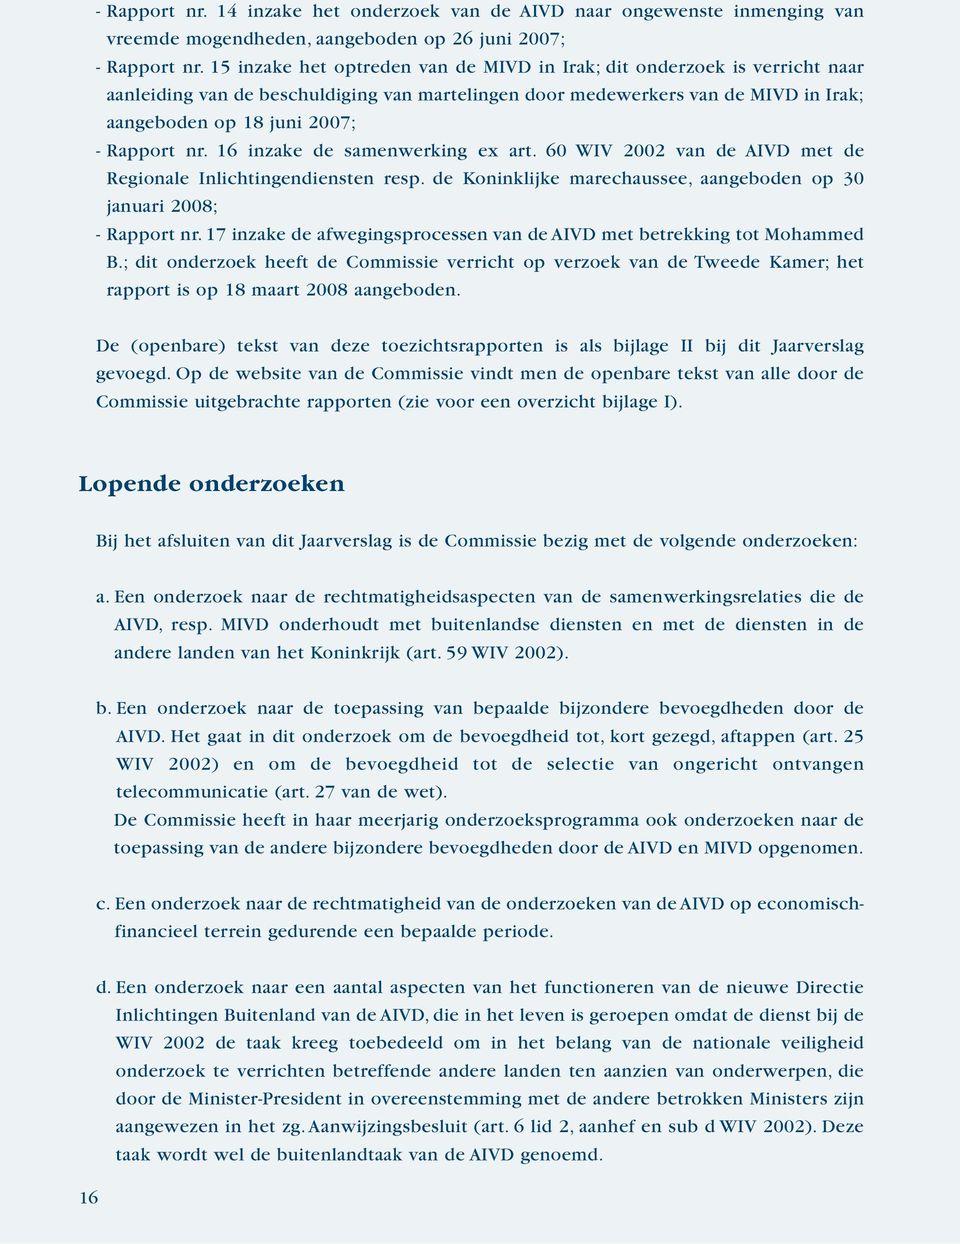 nr. 16 inzake de samenwerking ex art. 60 WIV 2002 van de AIVD met de Regionale Inlichtingendiensten resp. de Koninklijke marechaussee, aangeboden op 30 januari 2008; - Rapport nr.